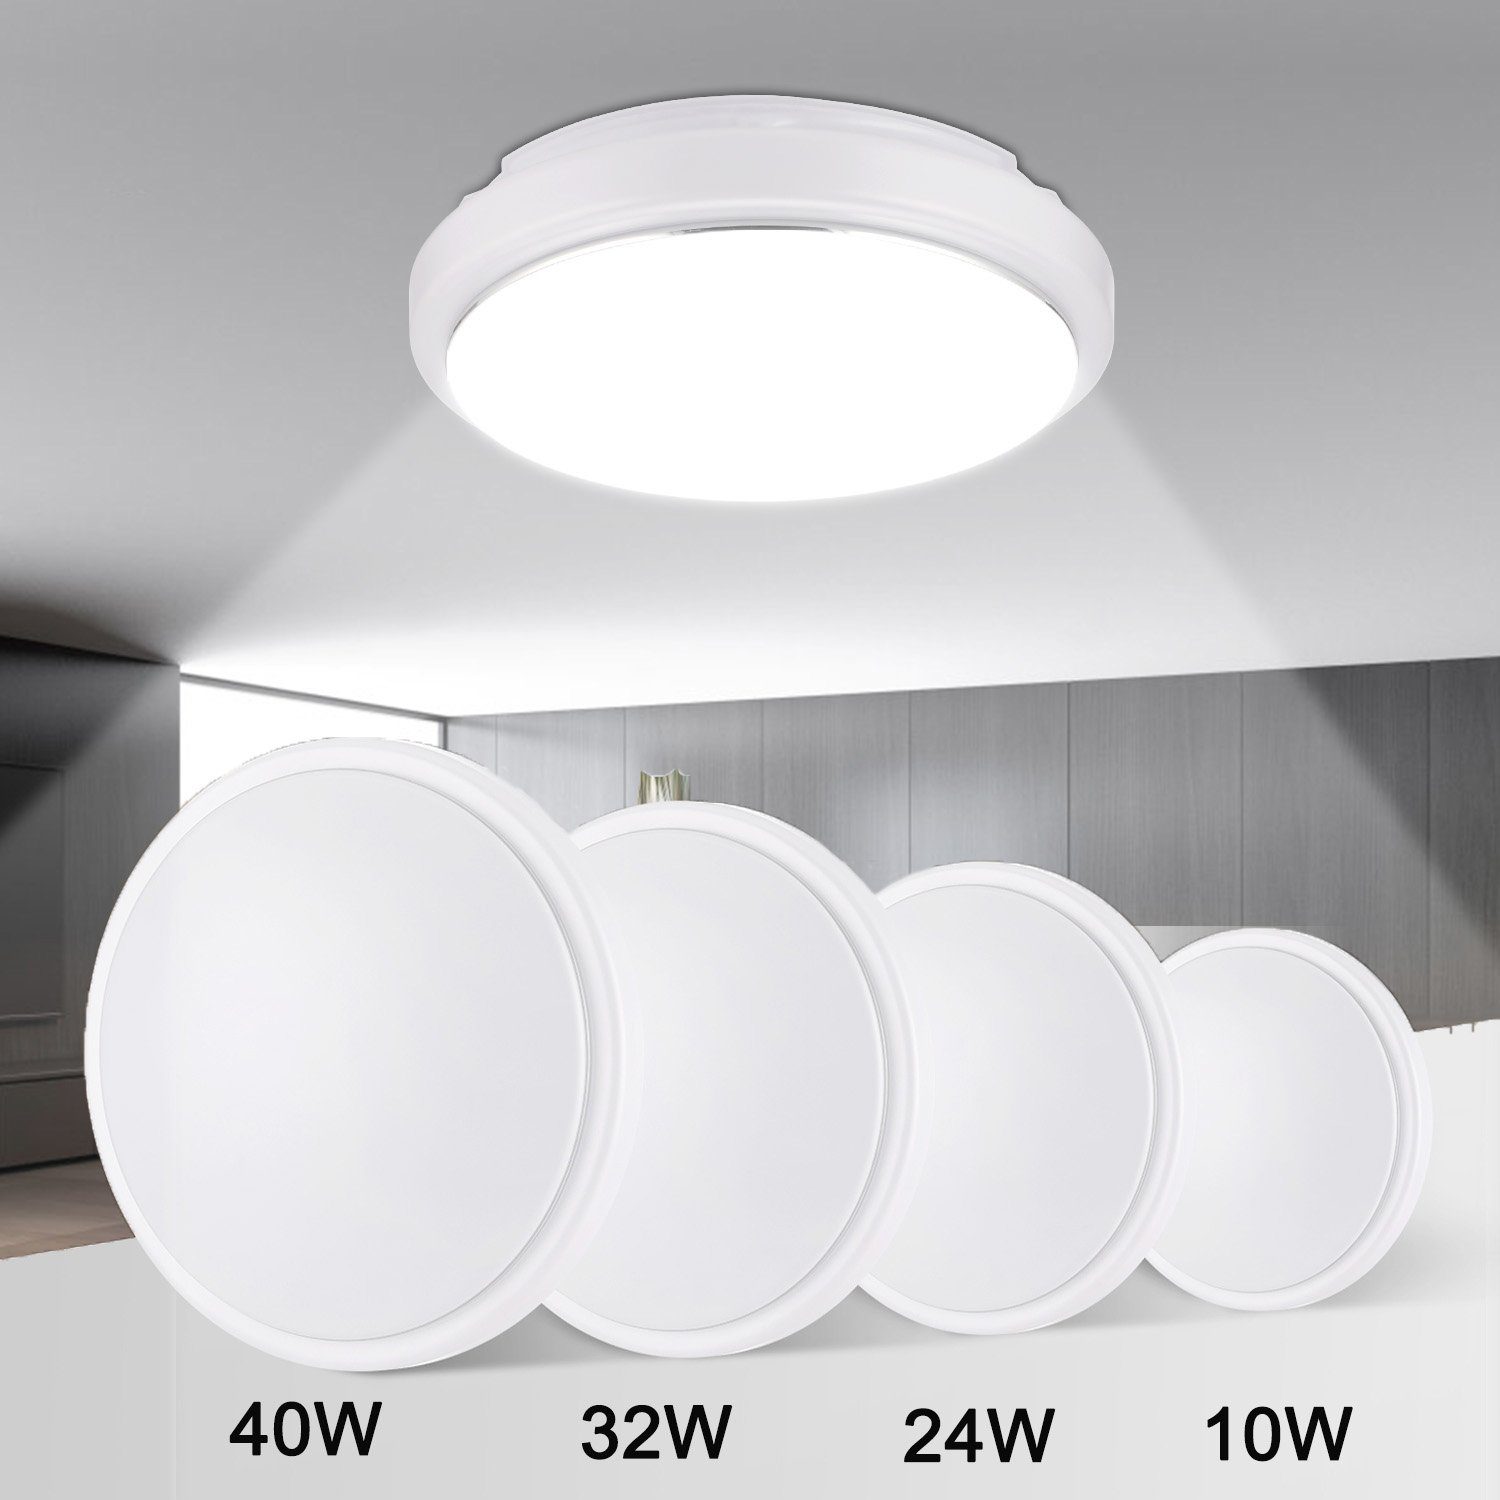 LETGOSPT Deckenleuchte Modern LED Deckenleuchte Flach Rund, Silberdraht-Design Deckenlampe, LED fest integriert, ‎Kaltweiß, Badezimmerlampe IP44 Wasserdicht, für Küche Wohnzimmer Schlafzimmer 10W Deckenlampe Ø20cm